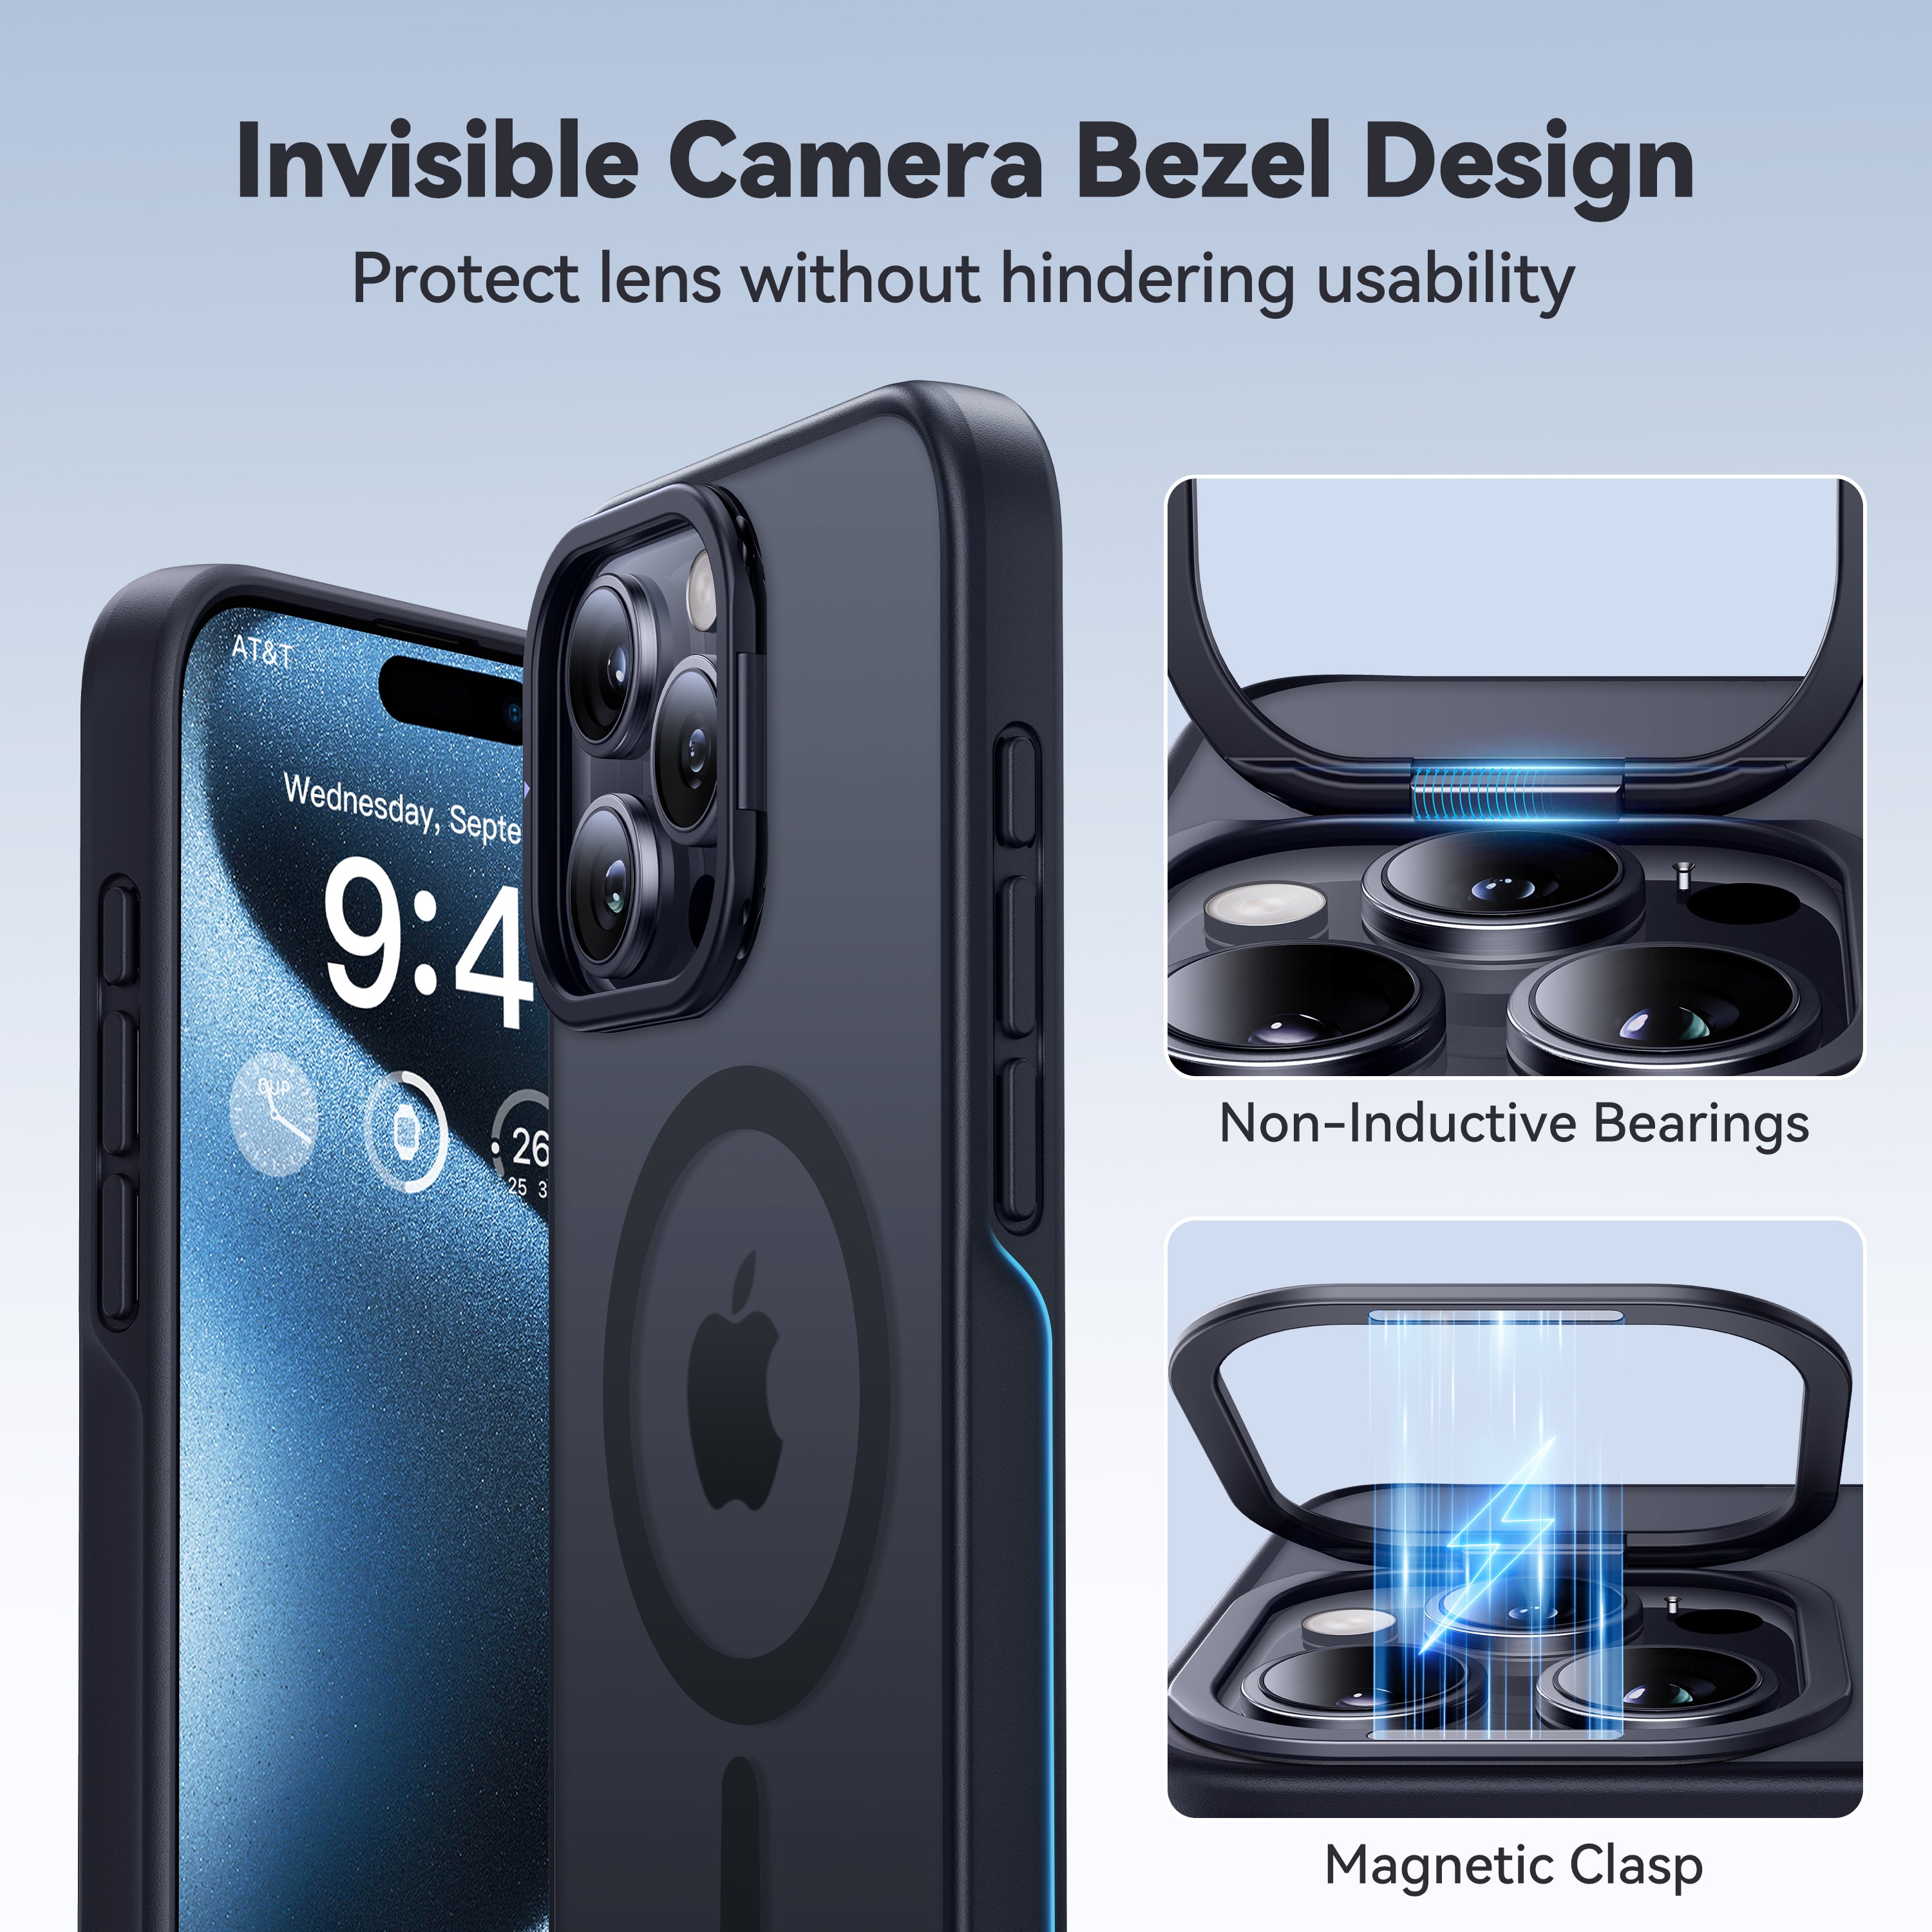 CASEKOO iPhone マット 指紋防止 スリム 携帯ケース キックスタンド付き MagSafe 対応 - Kooshock シリーズ レンズスタンド バージョン